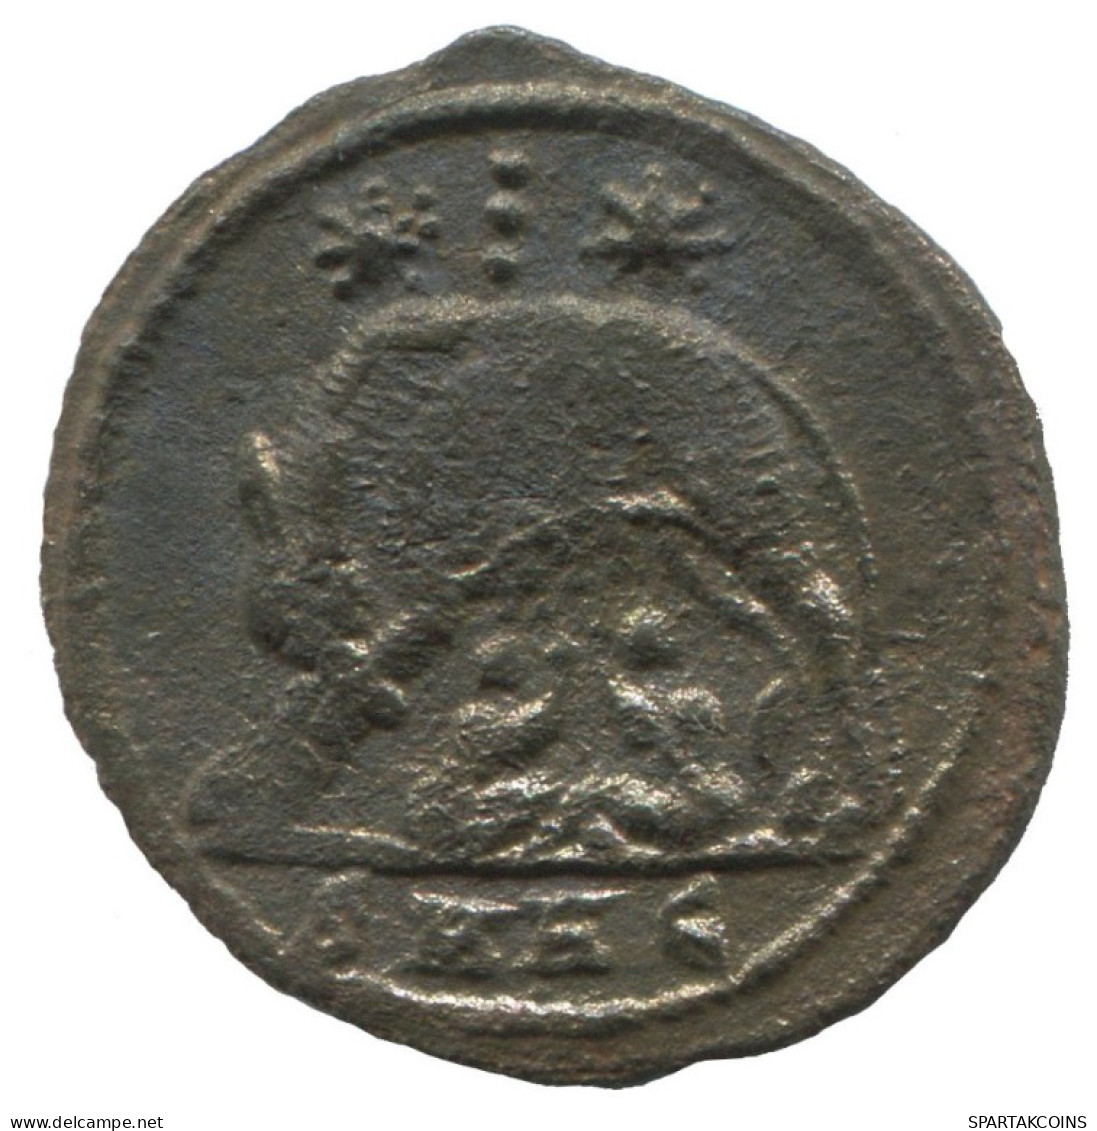 CONSTANTINE I NICOMEDIA AD330-335 1.8g/20mm #ANN1601.30.D.A - El Imperio Christiano (307 / 363)